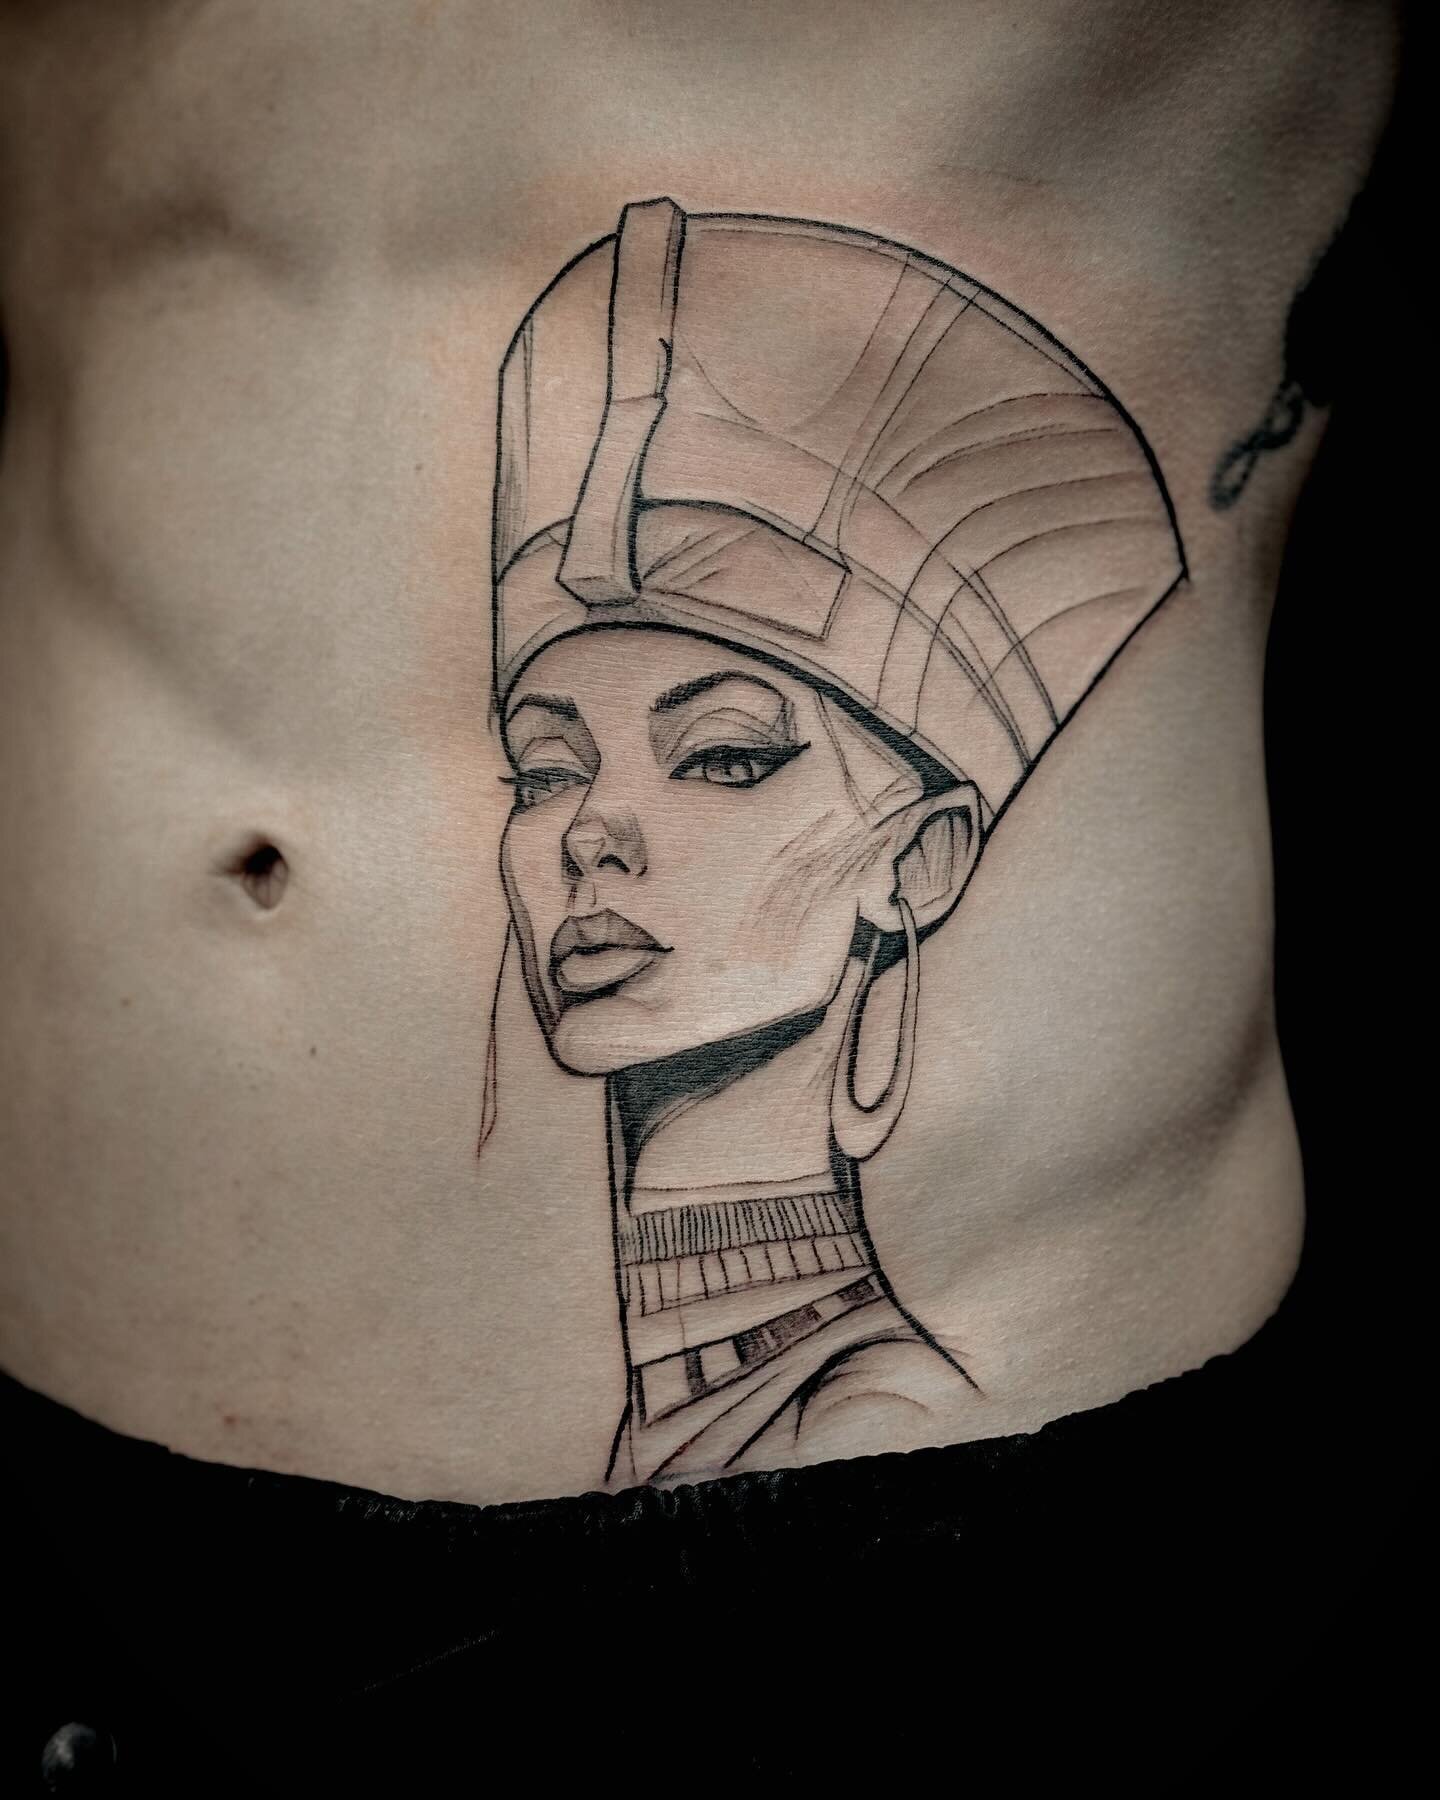 Afrodite(Abstract)
.
.
.
#tattoo #tattoos #tattooideas #birsfelden #basel #studio #switzerland #tattooforwoman #afroditetattoo #afrodite